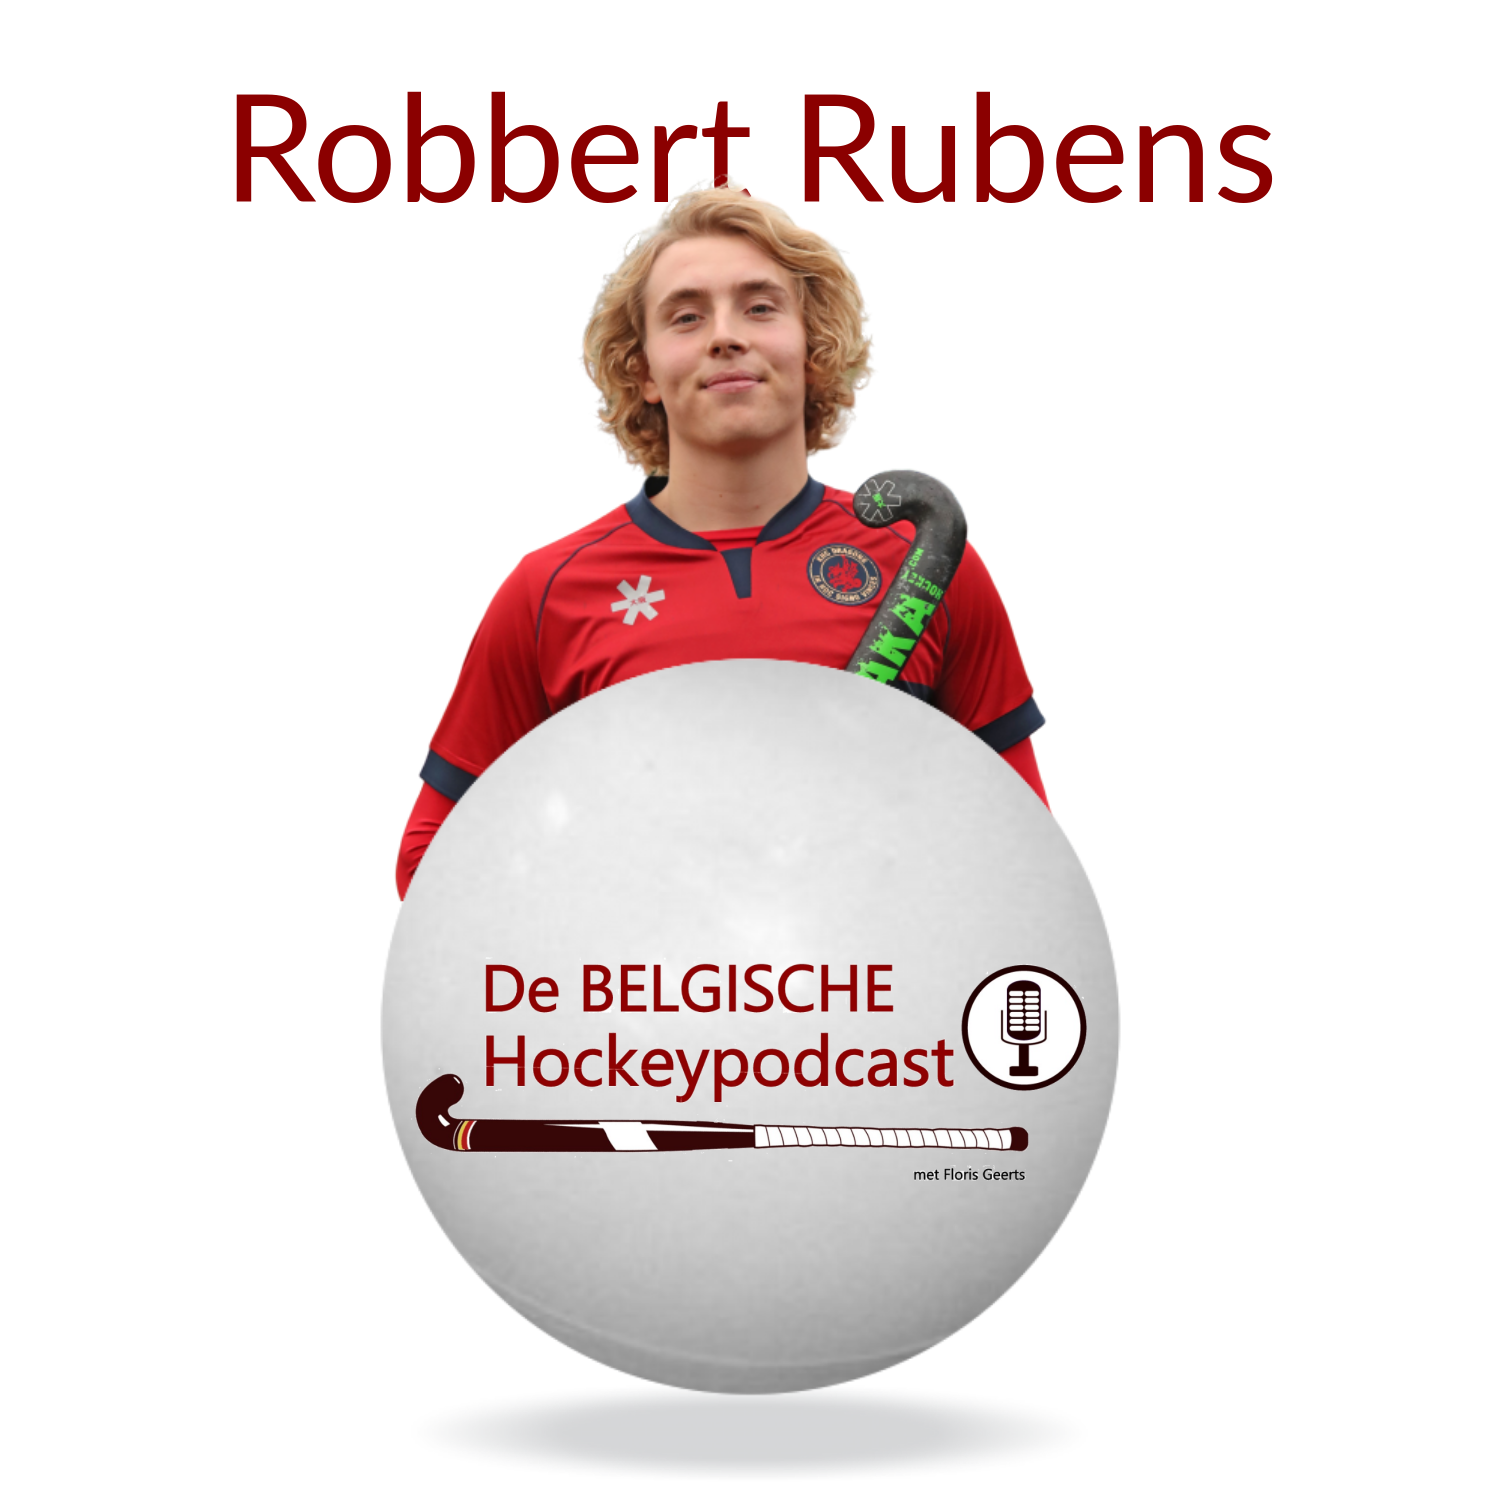 Robbert Rubens